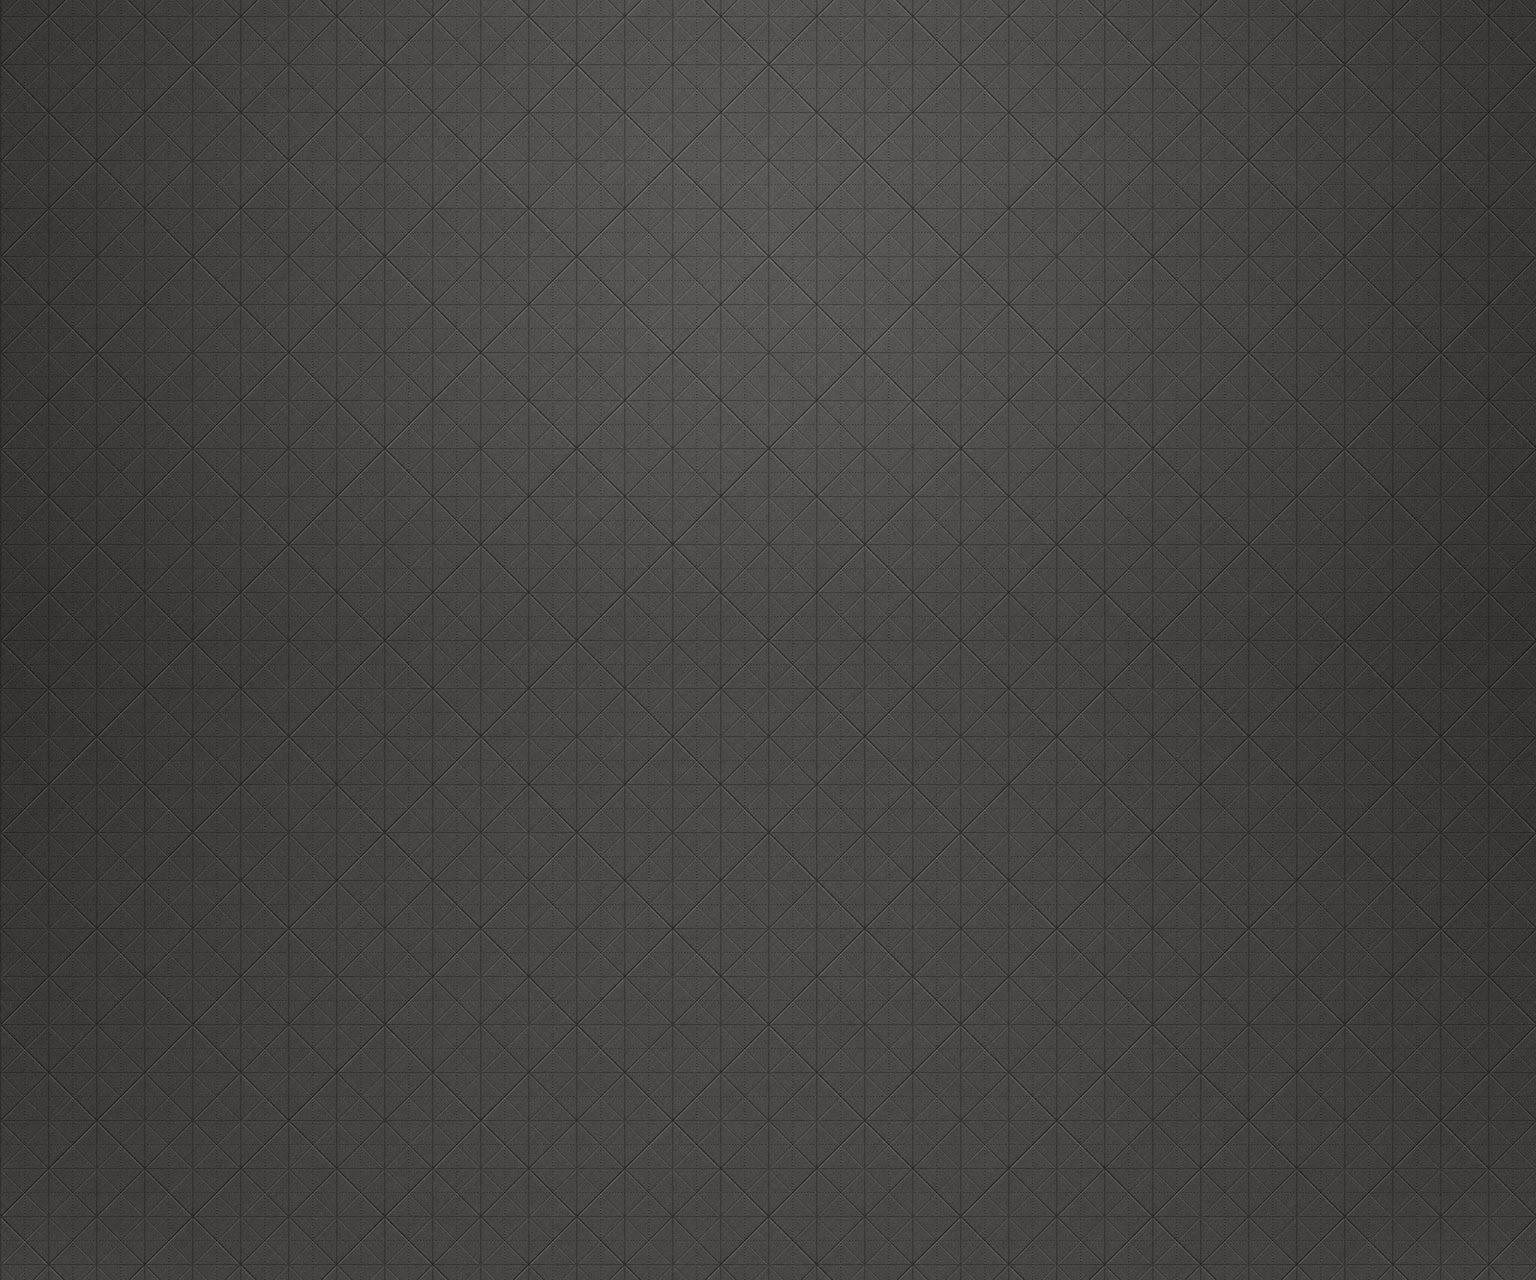 Best Simple Blackberry Z10 Background Wallpaper